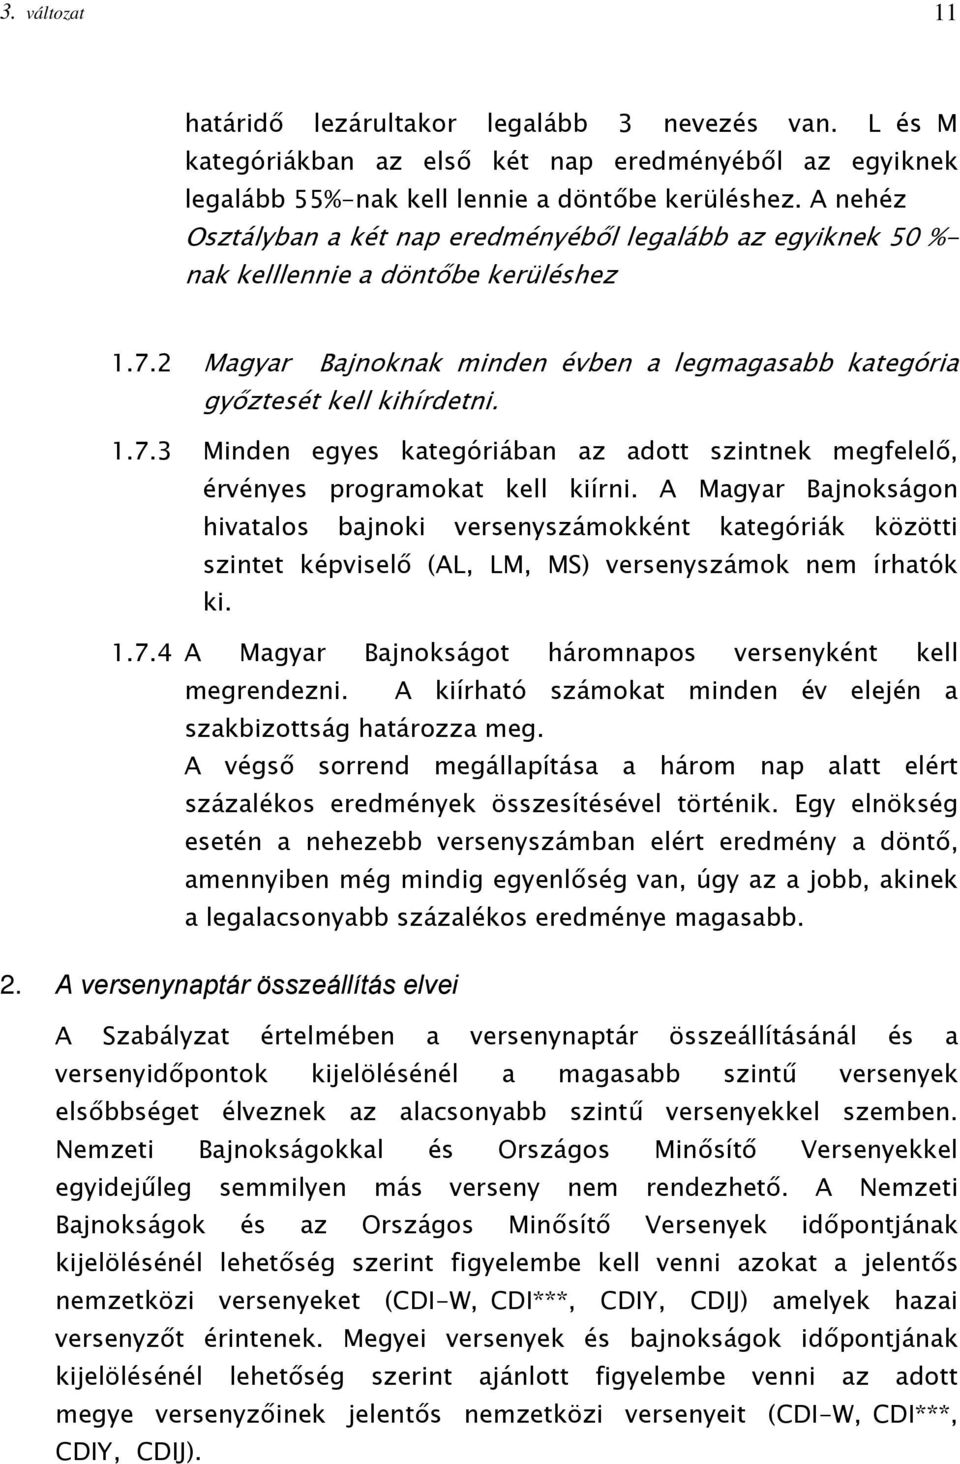 A Magyar Bajnokságon hivatalos bajnoki versenyszámokként kategóriák közötti szintet képviselő (AL, LM, MS) versenyszámok nem írhatók ki. 1.7.